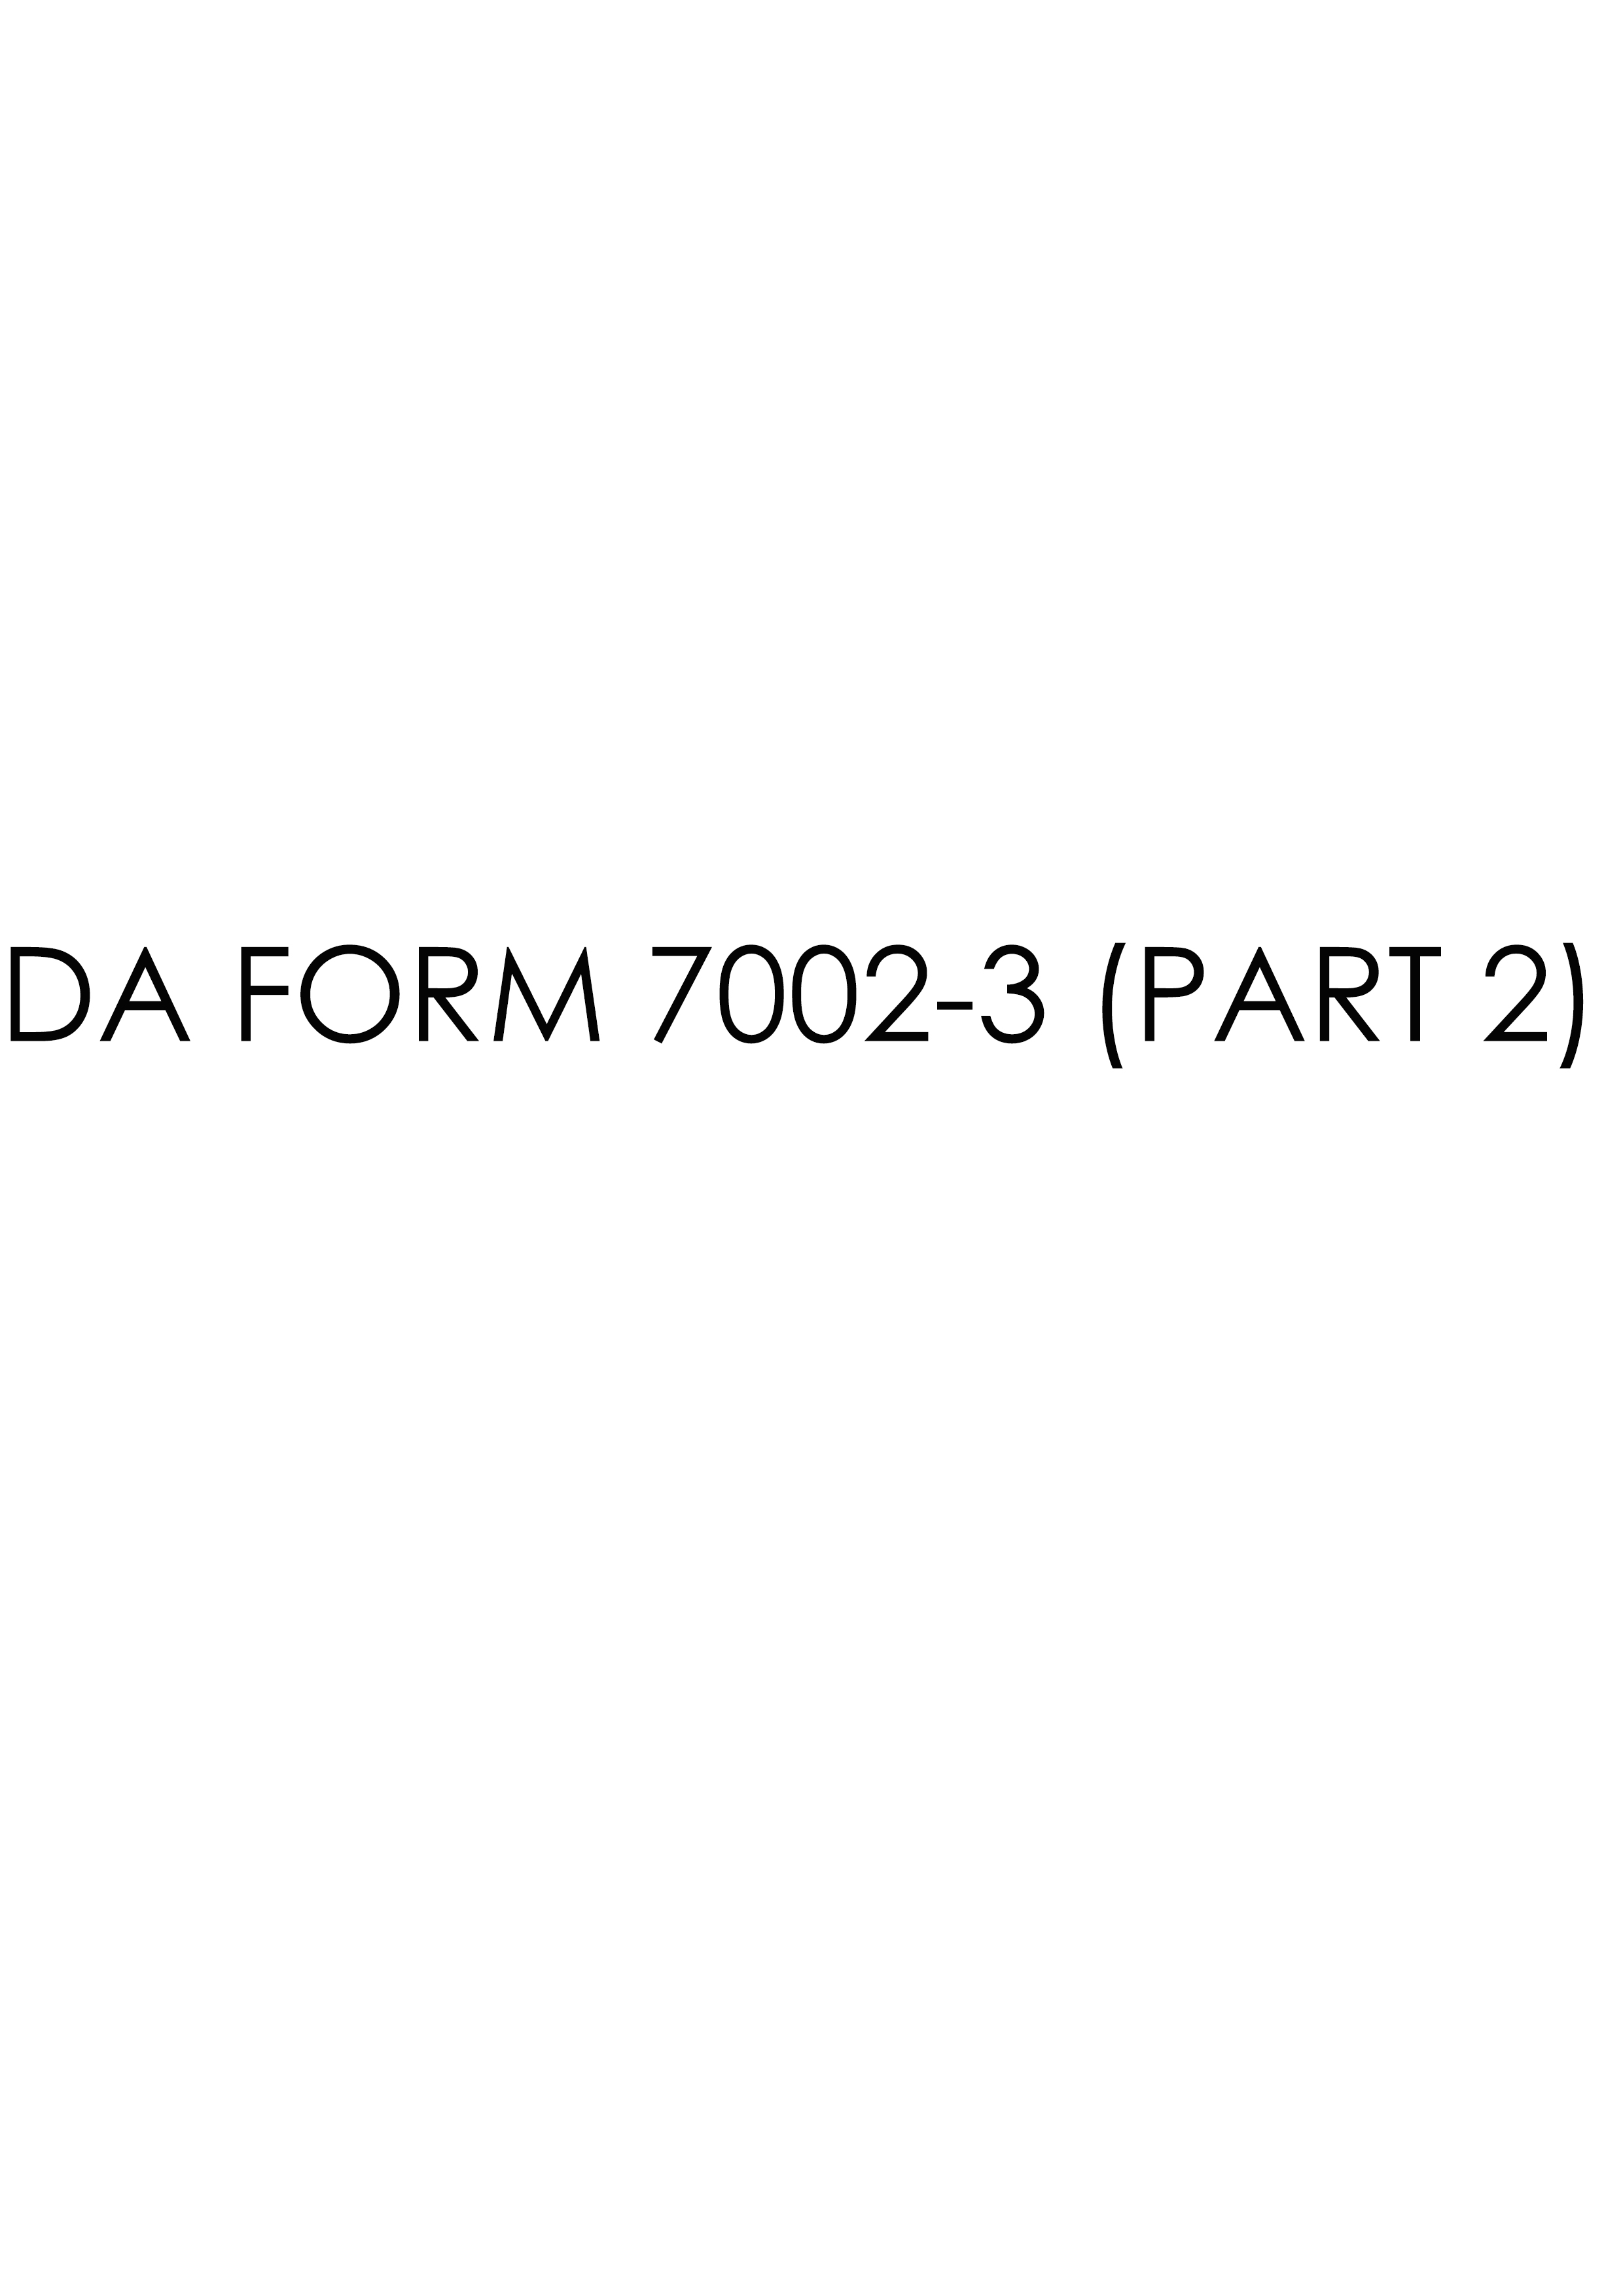 da Form 7002-3 (PART 2) fillable